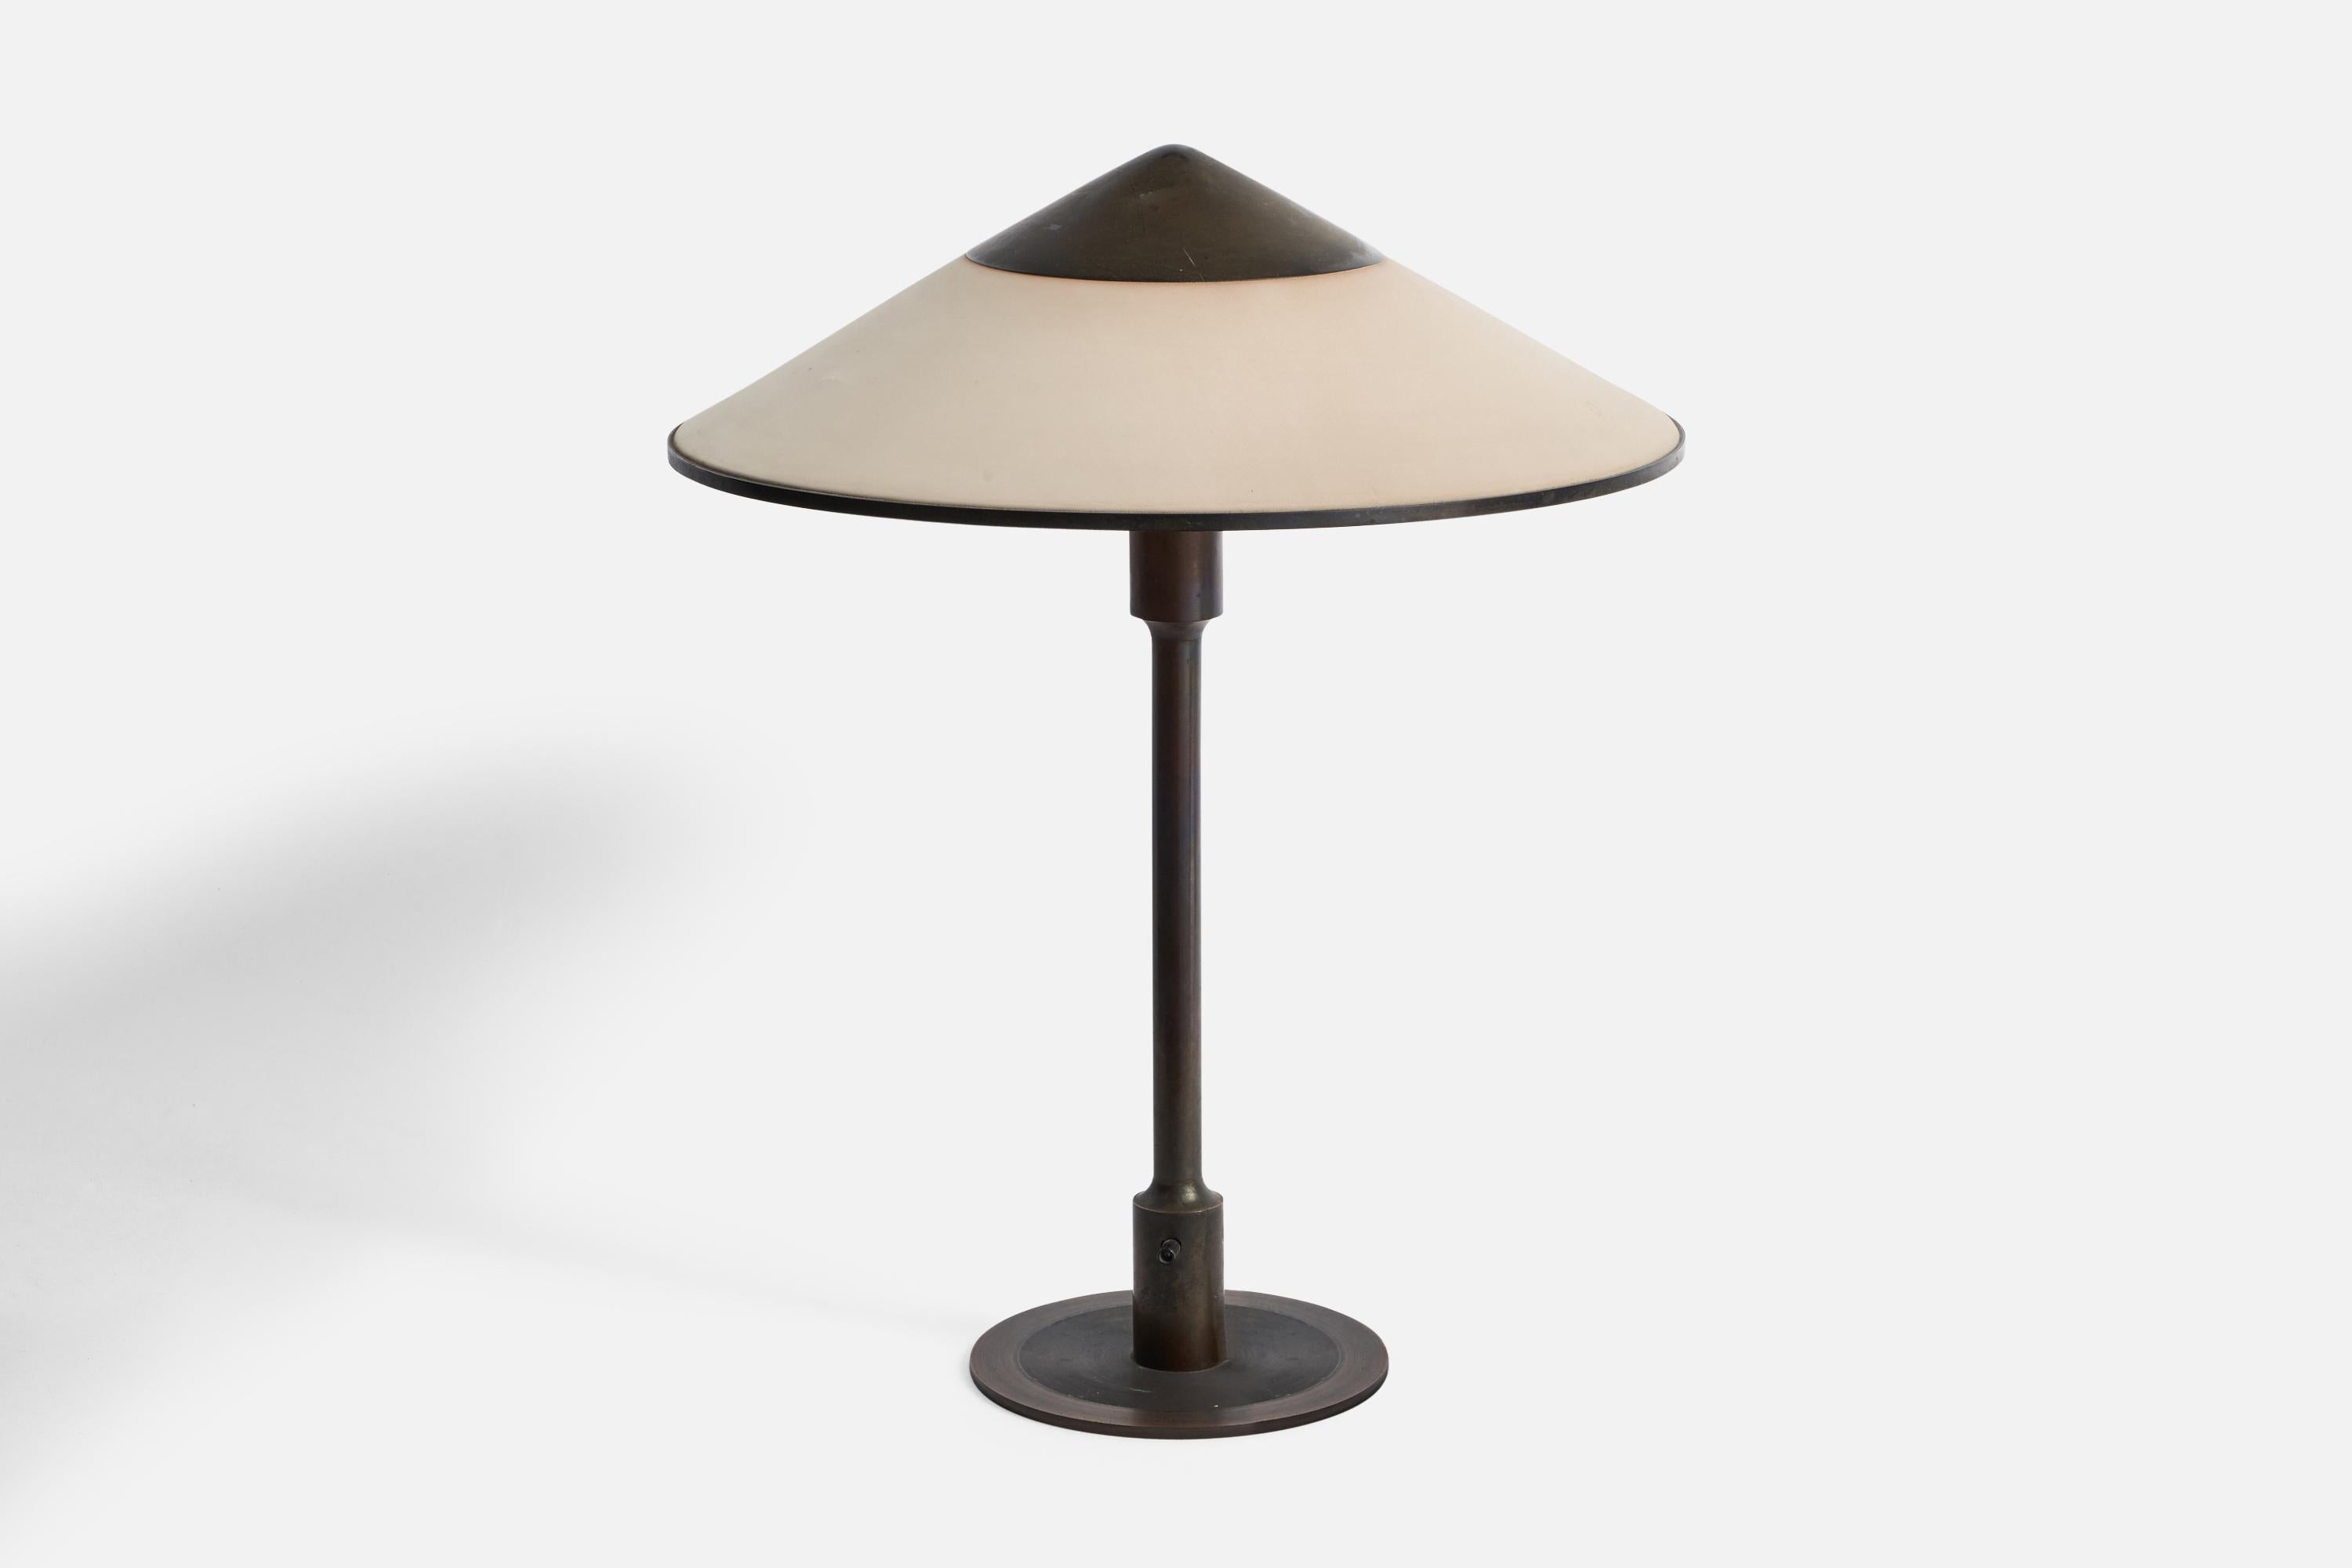 Lampe de table en laiton et papier ciré blanc cassé, conçue et produite par Niels Rasmussen Thykier, Danemark, années 1930.

Dimensions globales (pouces) : 19.38